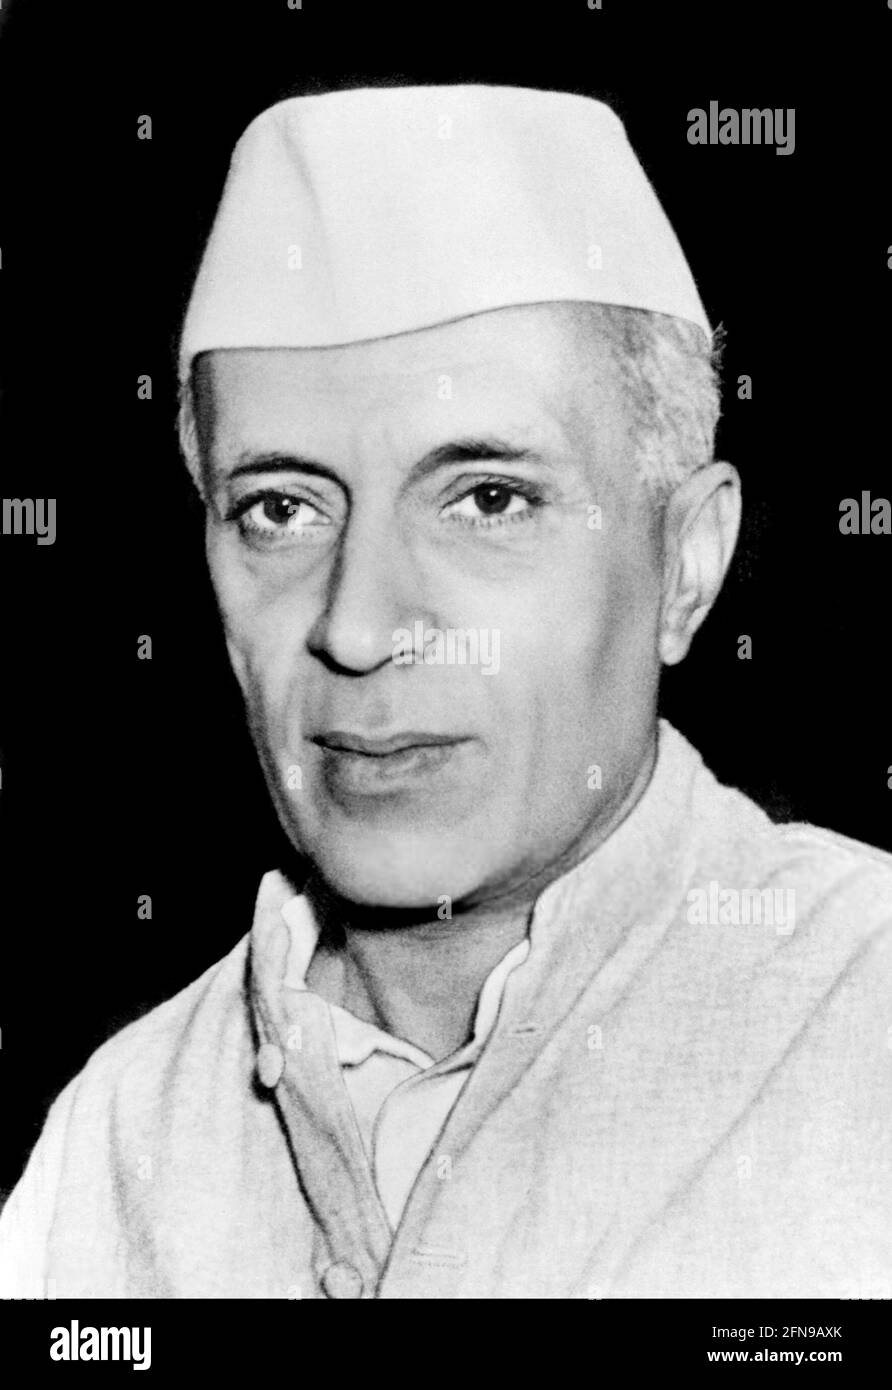 Jawaharlal Nehru. Ritratto del primo primo ministro indiano, Jawaharlal Nehru (1889-1964) nel 1947 Foto Stock